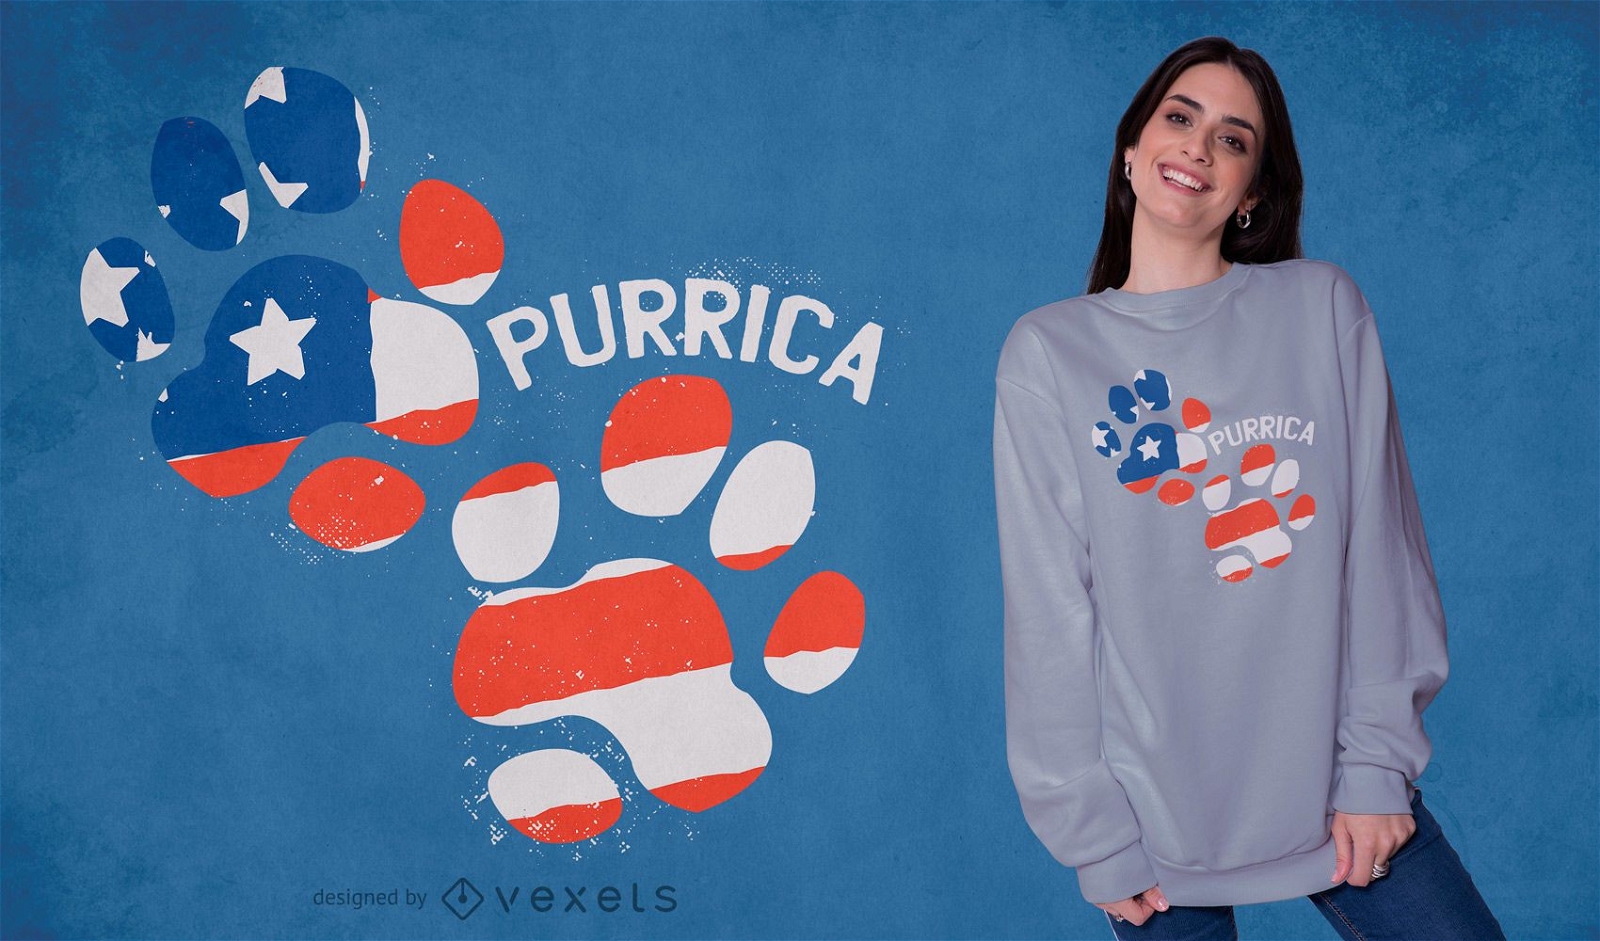 Purrica footprint t-shirt design